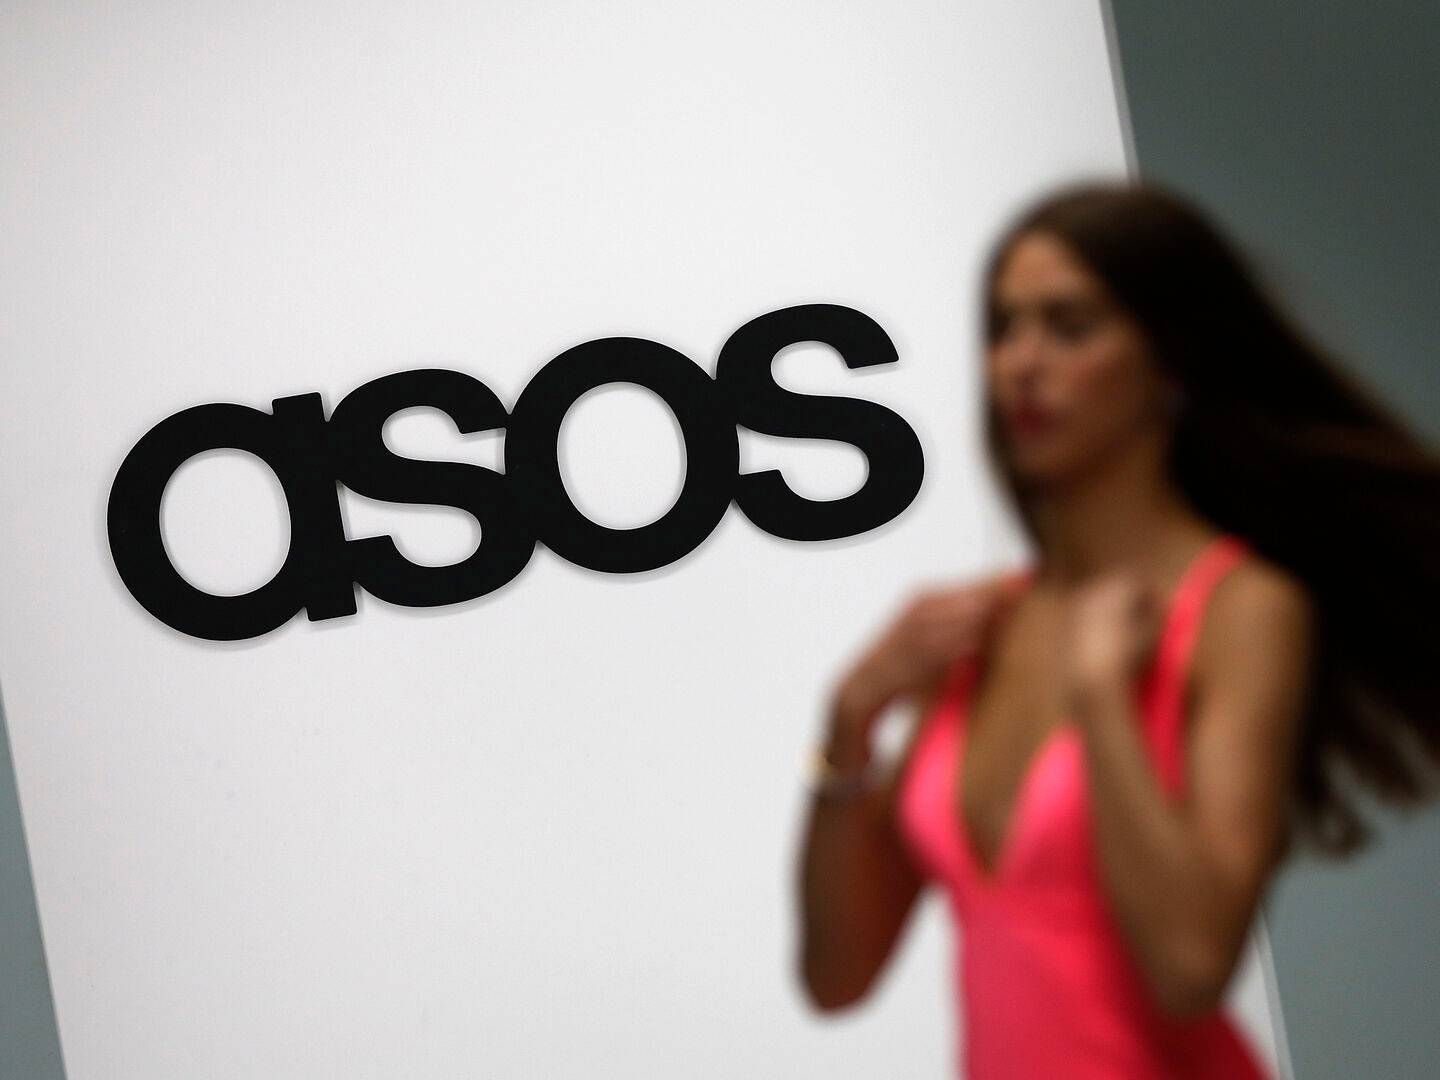 Asos har især været tynget af det seneste års nedgang i onlinemarkedet og mere tilbageholdende forbrugere. | Photo: Suzanne Plunkett/Reuters/Ritzau Scanpix